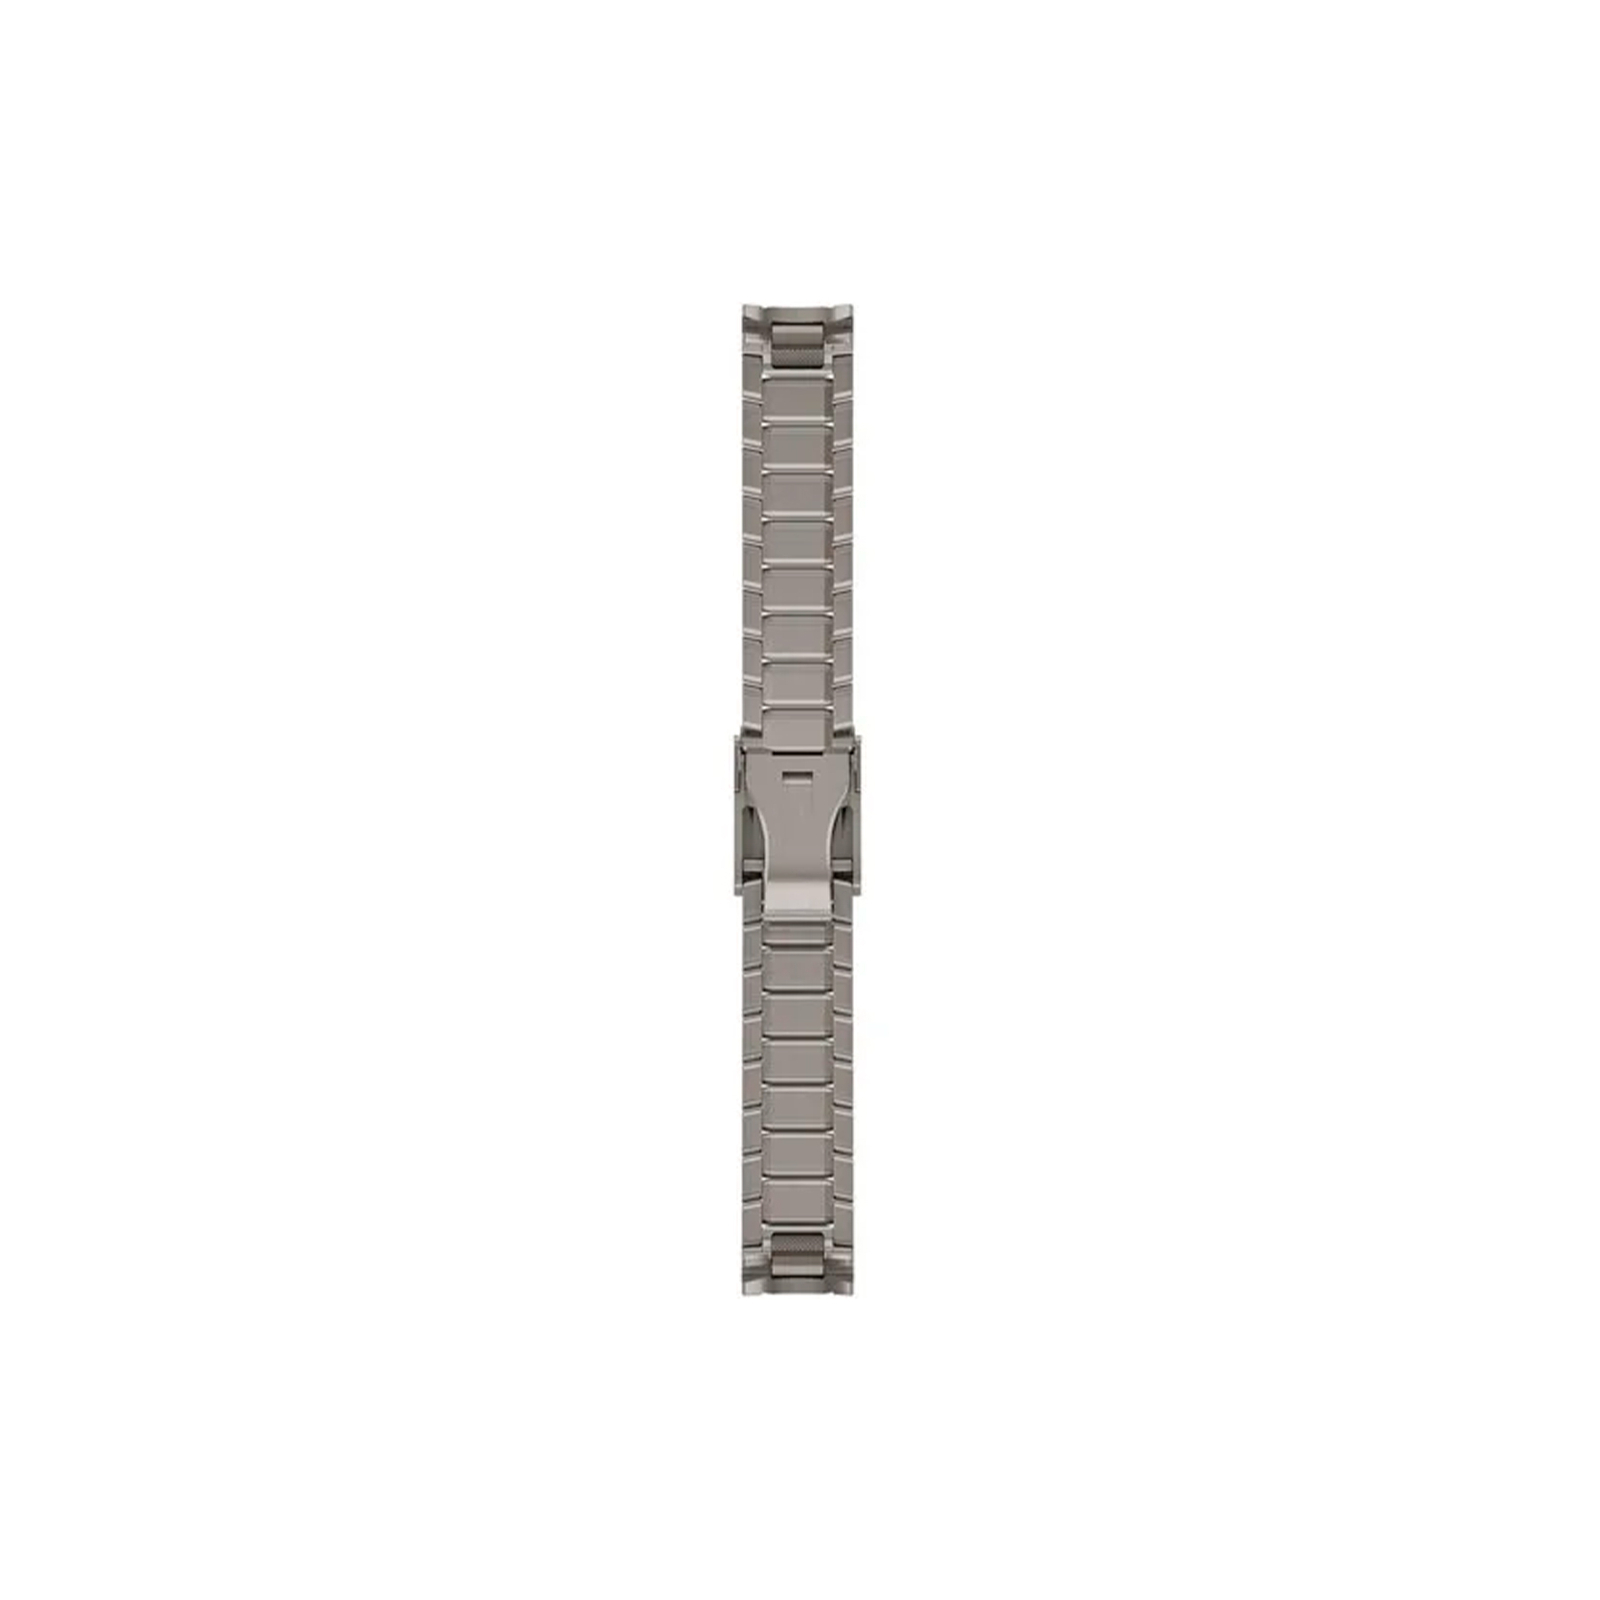 Ремешок для смарт-часов Garmin MARQ GEN2, QF 22, Swept-Link PVD Titanium Bracelet (010-13225-12)